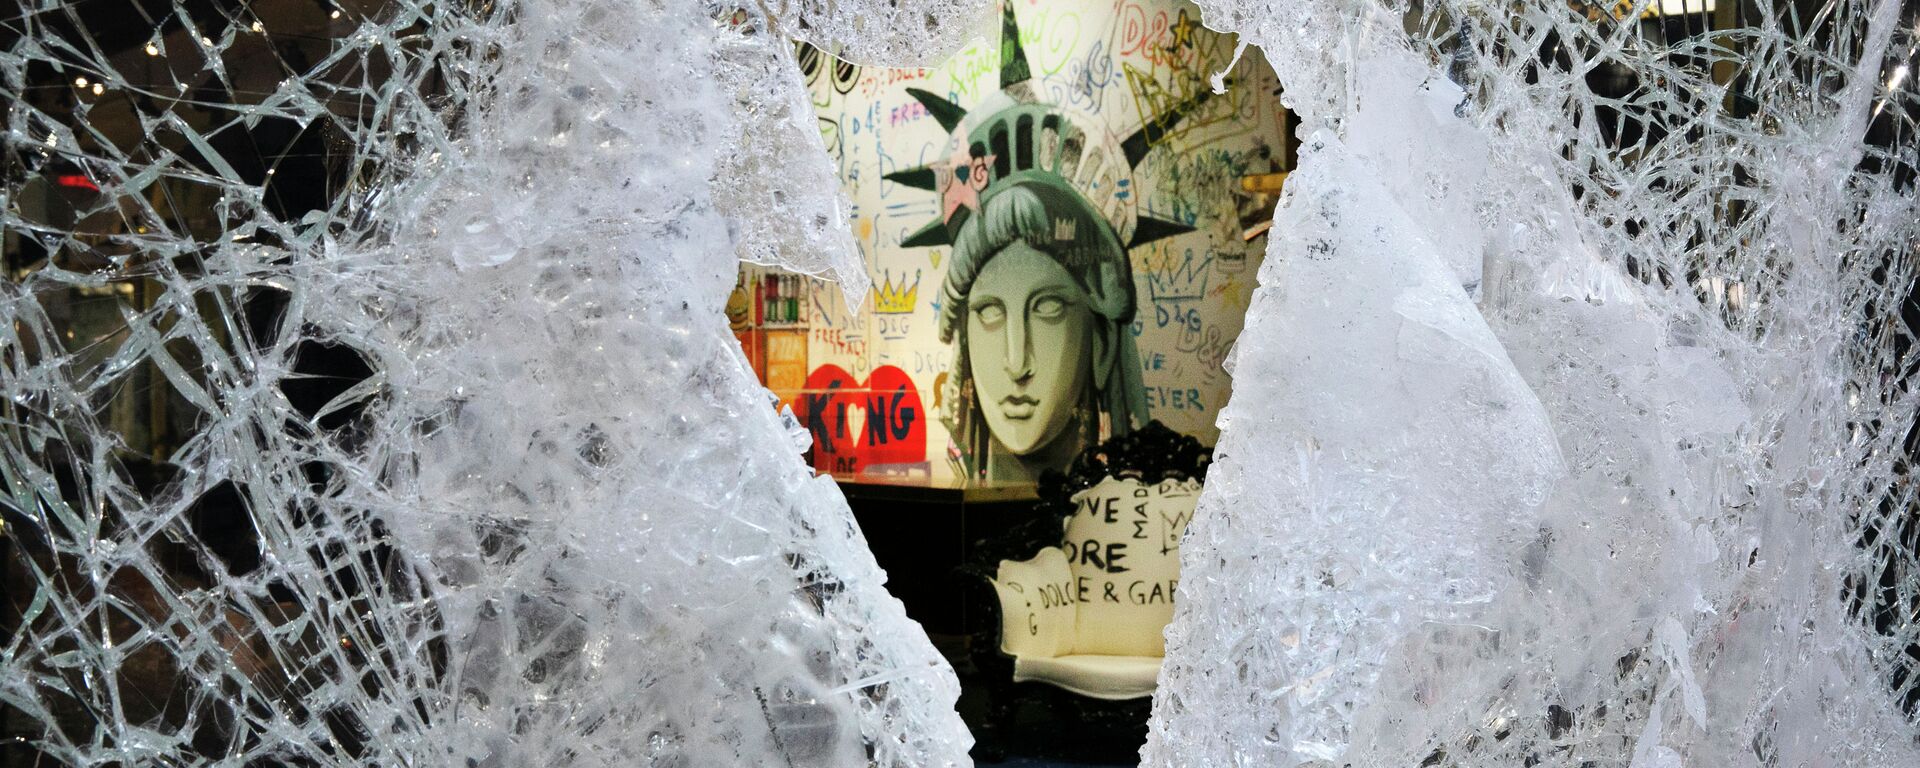 Картина Статуи Свободы видна через разбитую витрину магазина в Нью-Йорке. Архивное фото - Sputnik Кыргызстан, 1920, 26.07.2021